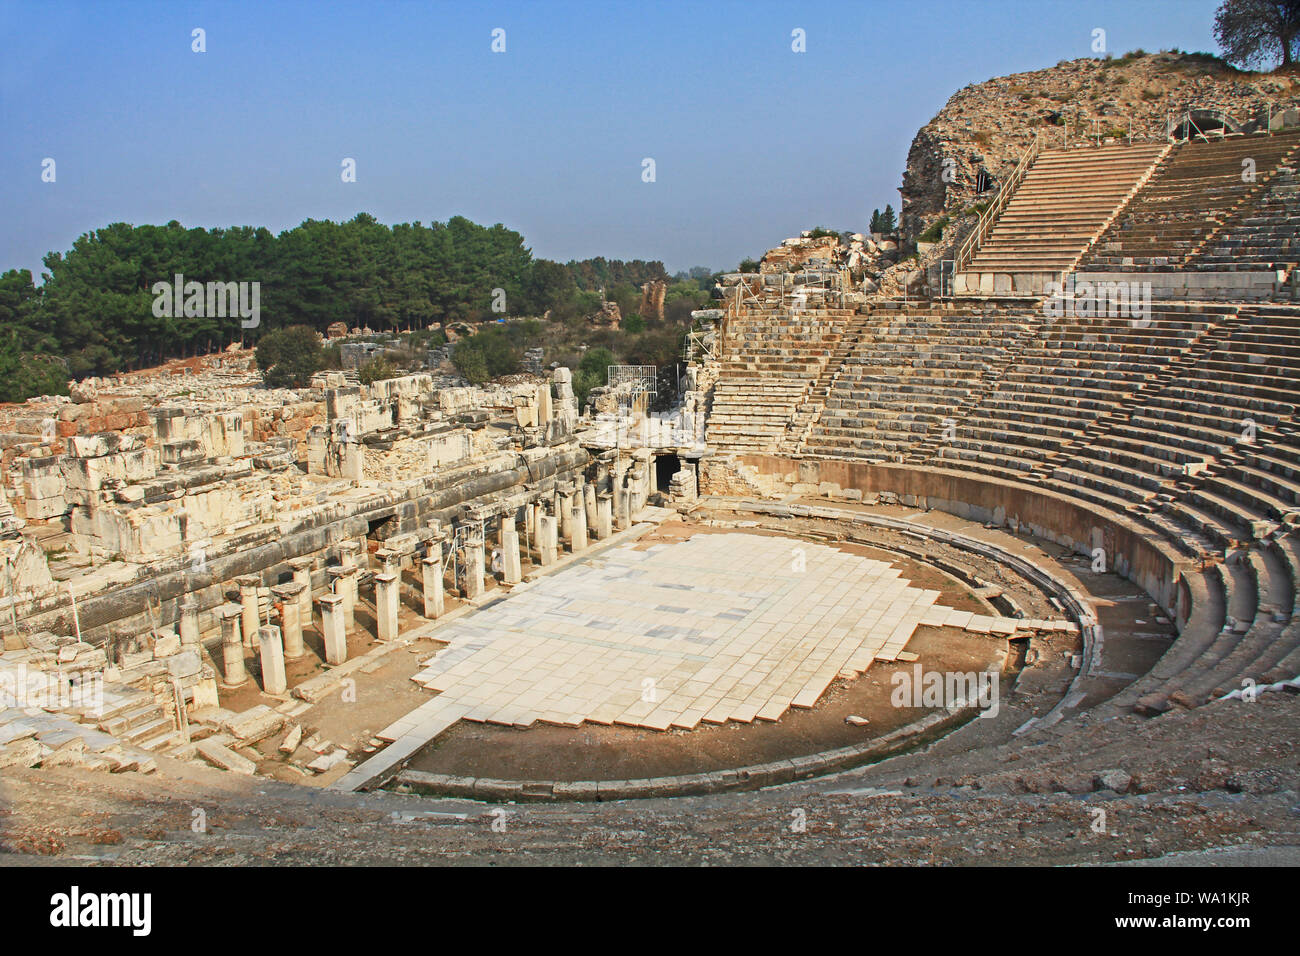 Ruines archéologiques de la Grand Théâtre d'Ephèse Turquie Banque D'Images